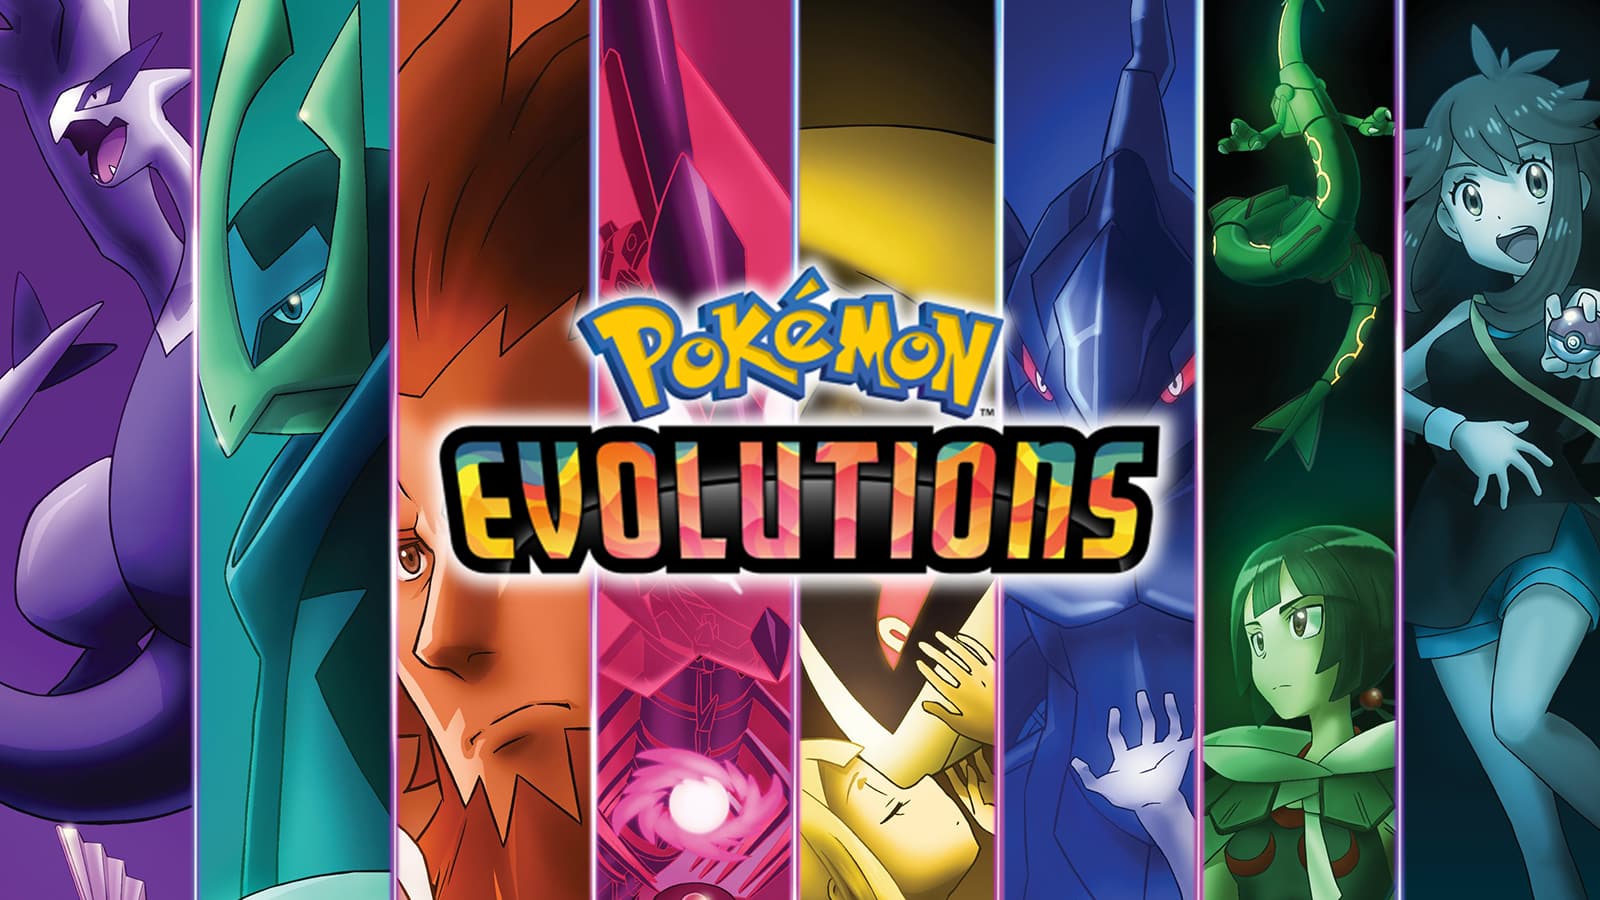 Series anime Pokémon Evolutions tung trailer đầu tiên, hứa hẹn mang đến một  cuộc phiêu lưu hoàn toàn mới